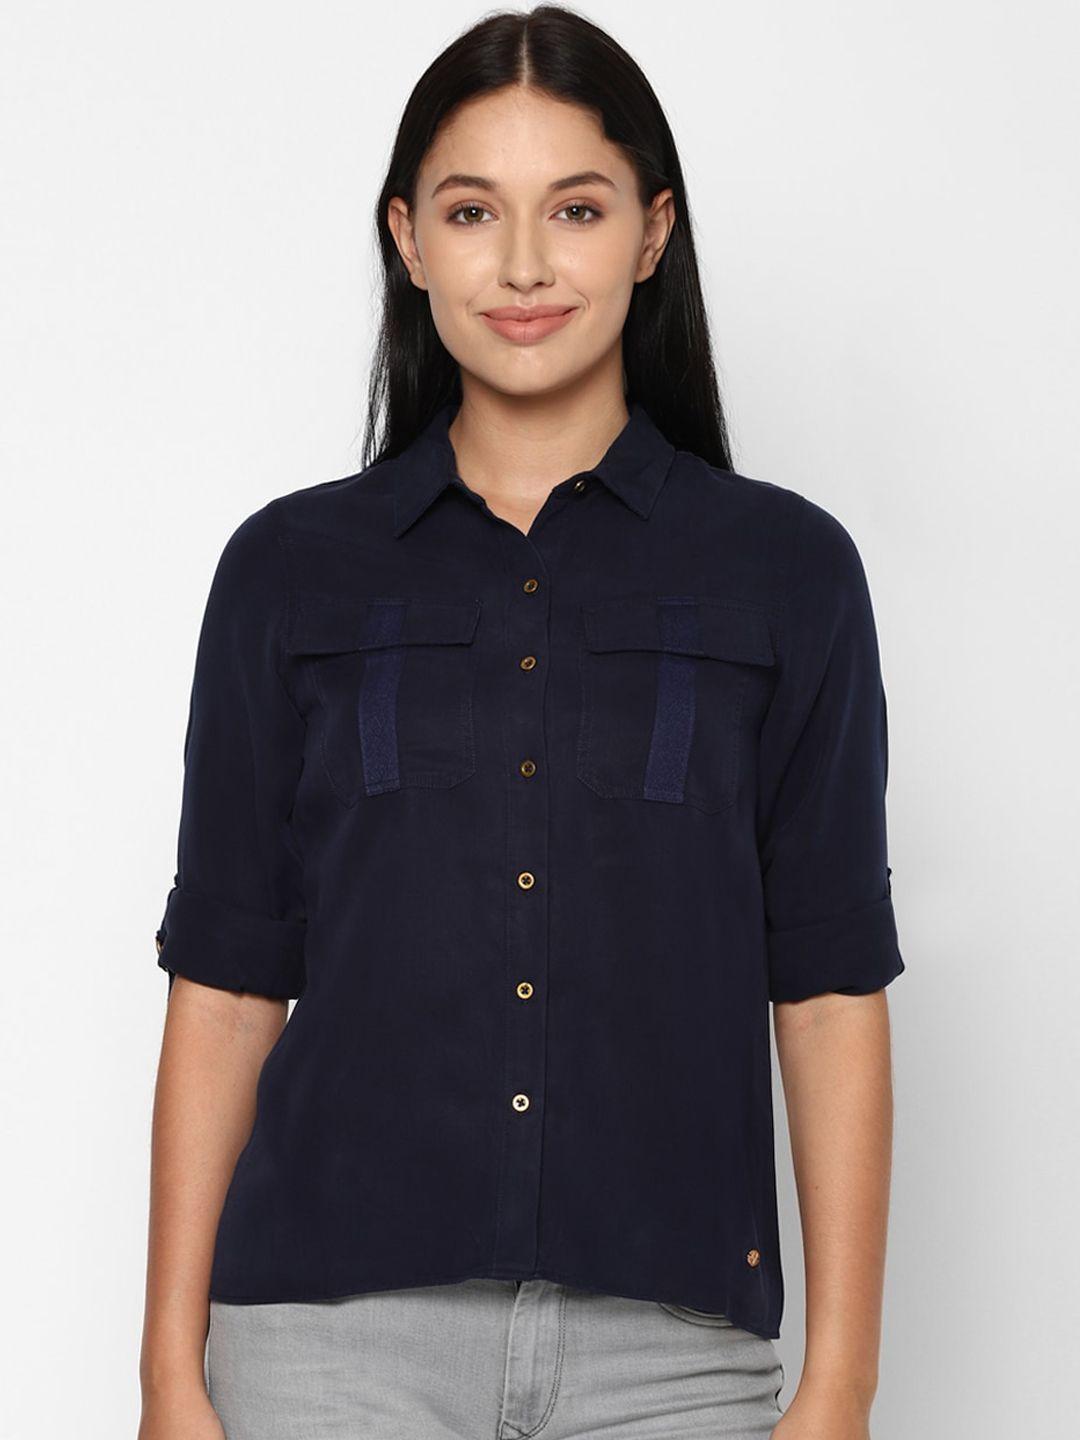 Allen Solly Woman Women Navy Blue Casual Shirt